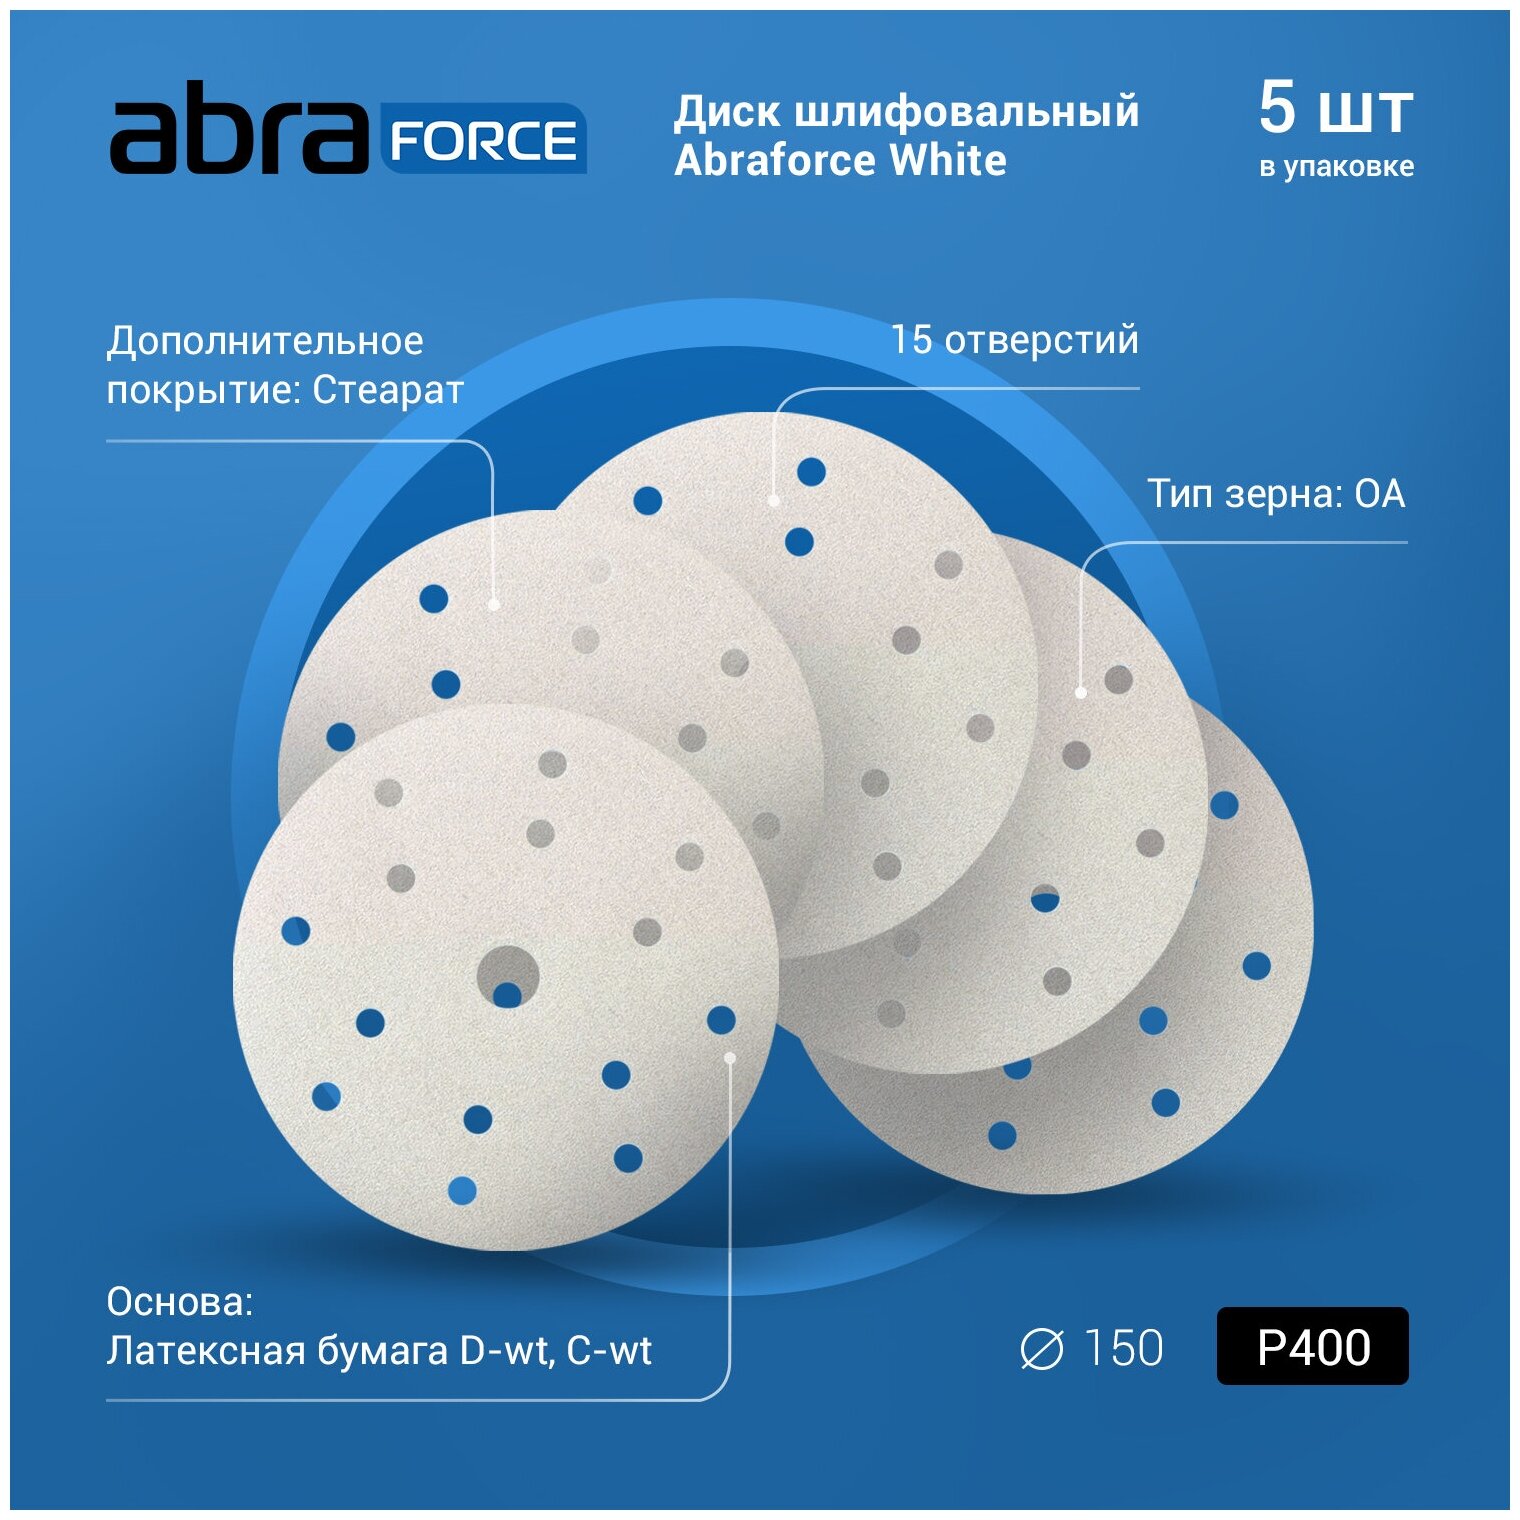 Диск шлифовальный ABRAforce White на бумажной основе 15отверстие диаметр 150мм Р400